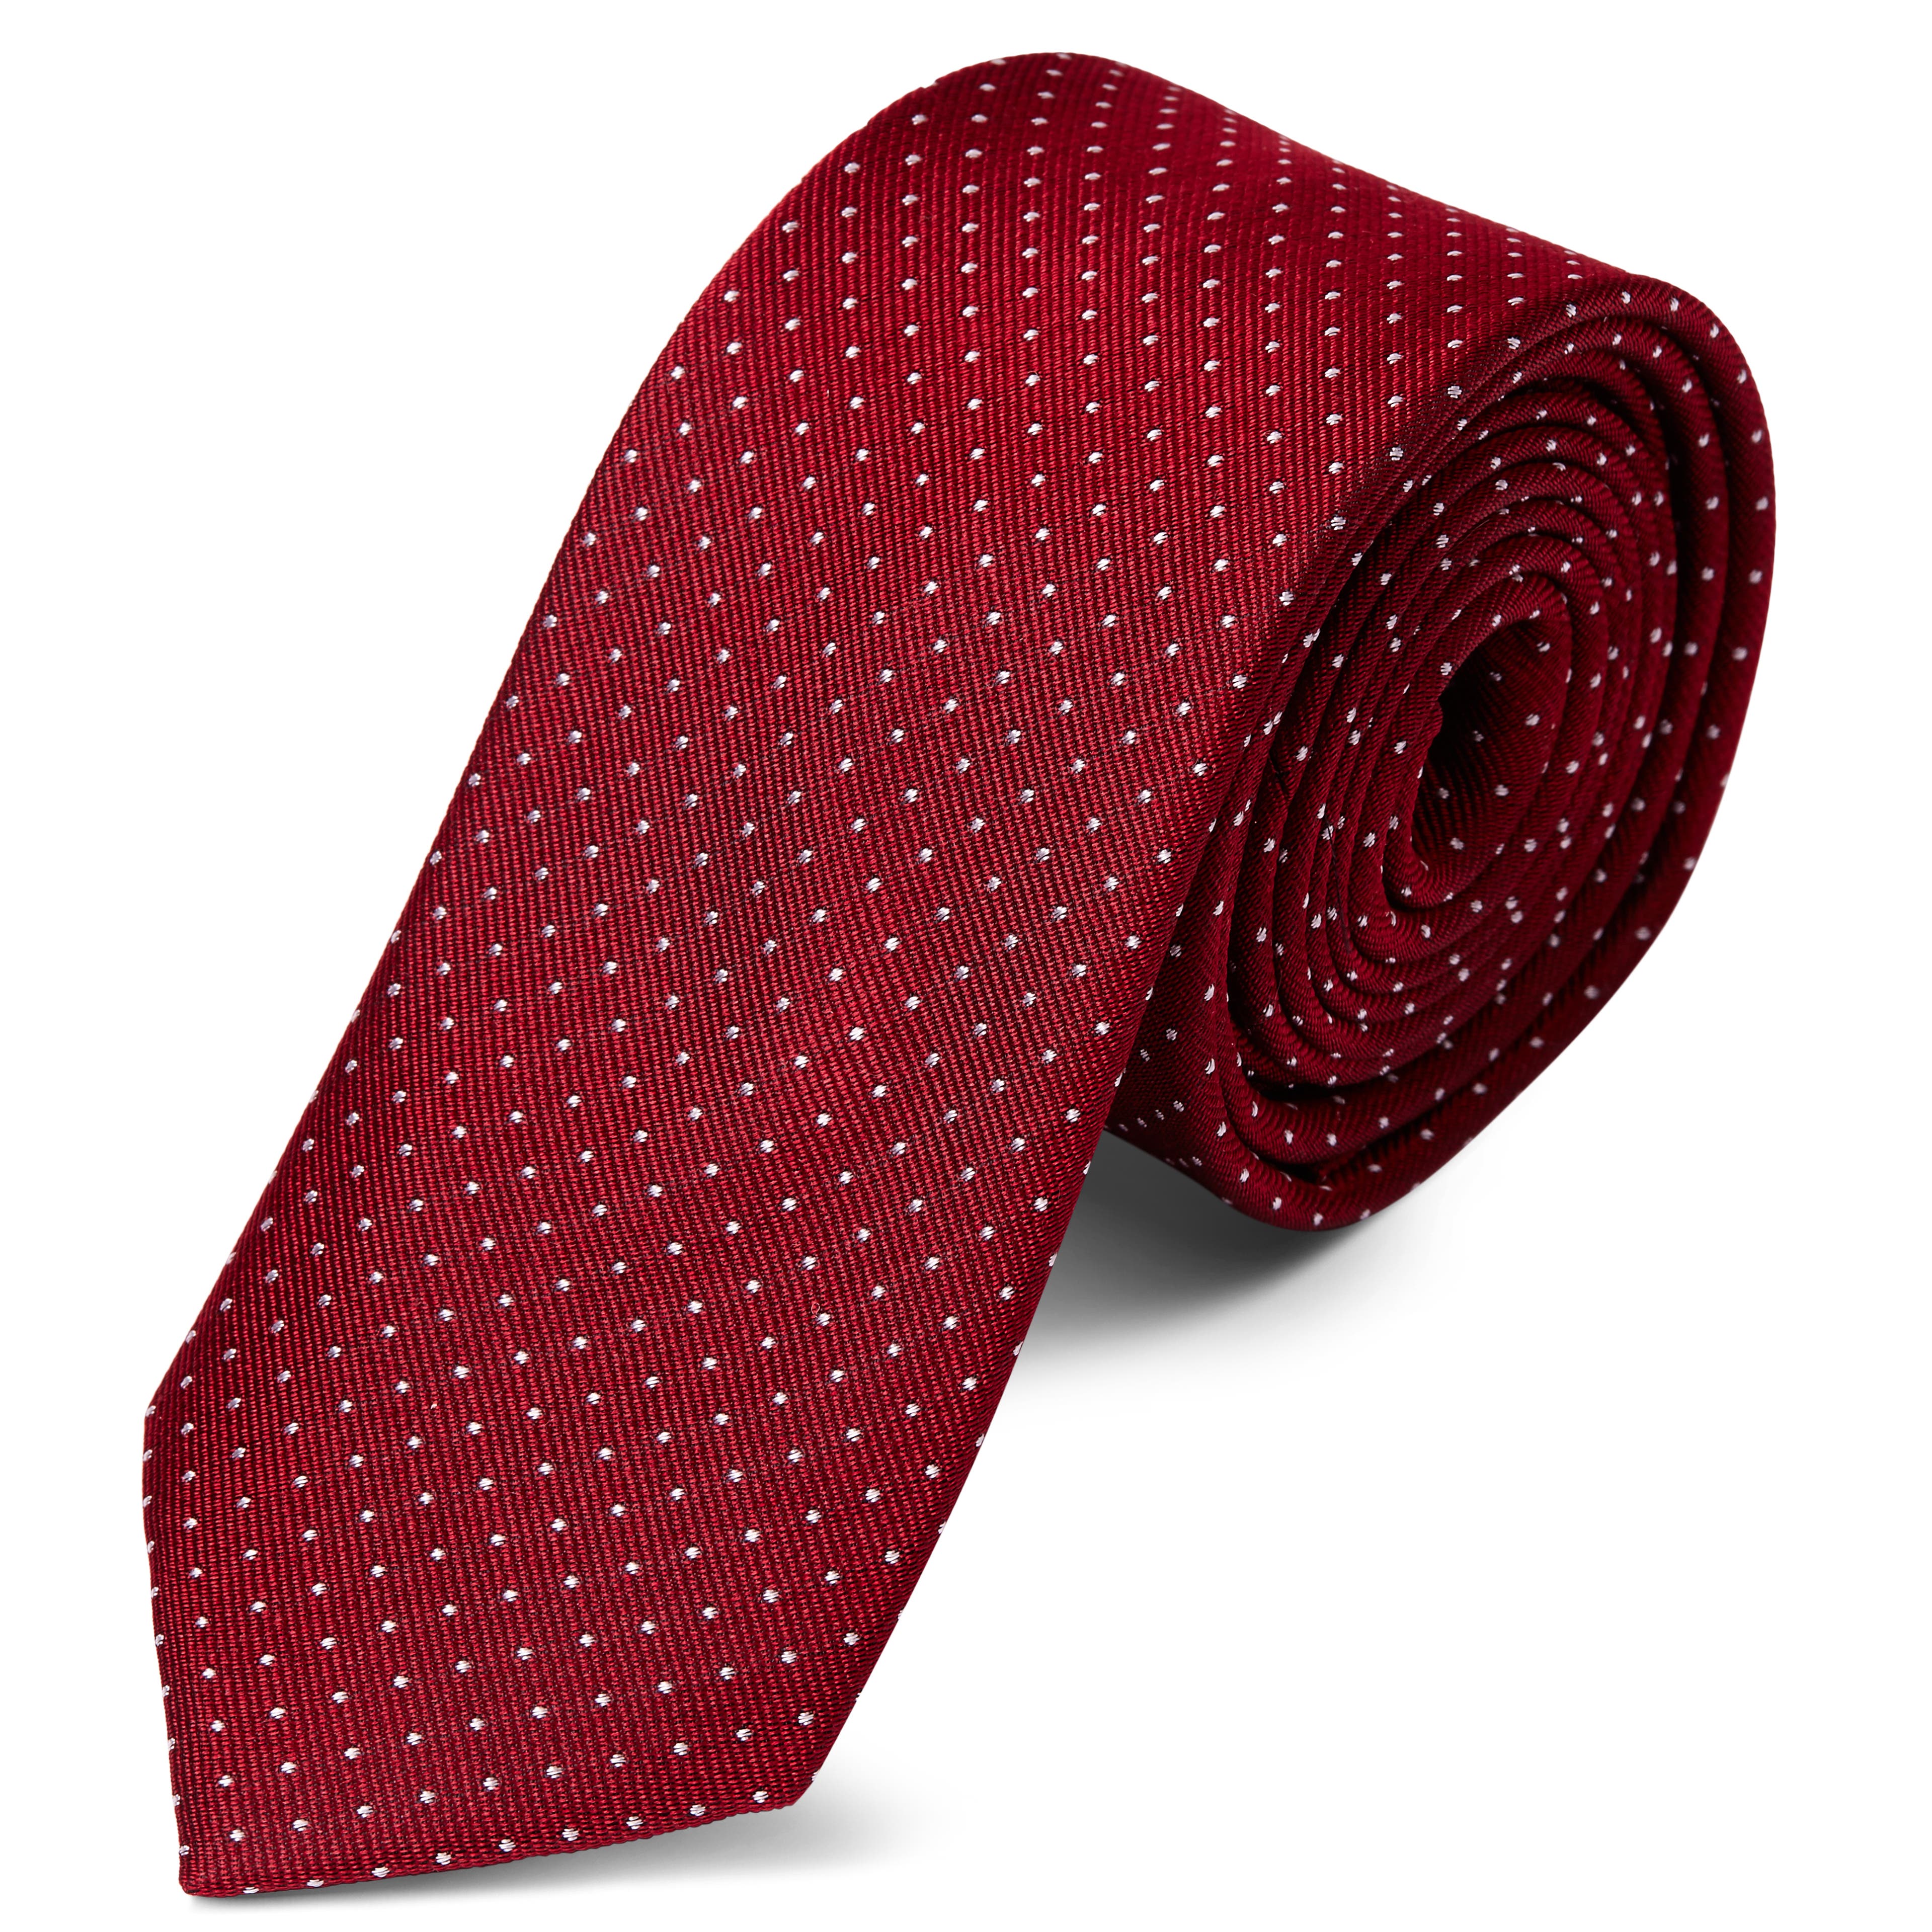 Vörös selyem nyakkendő fehér pöttyös mintával - 6 cm